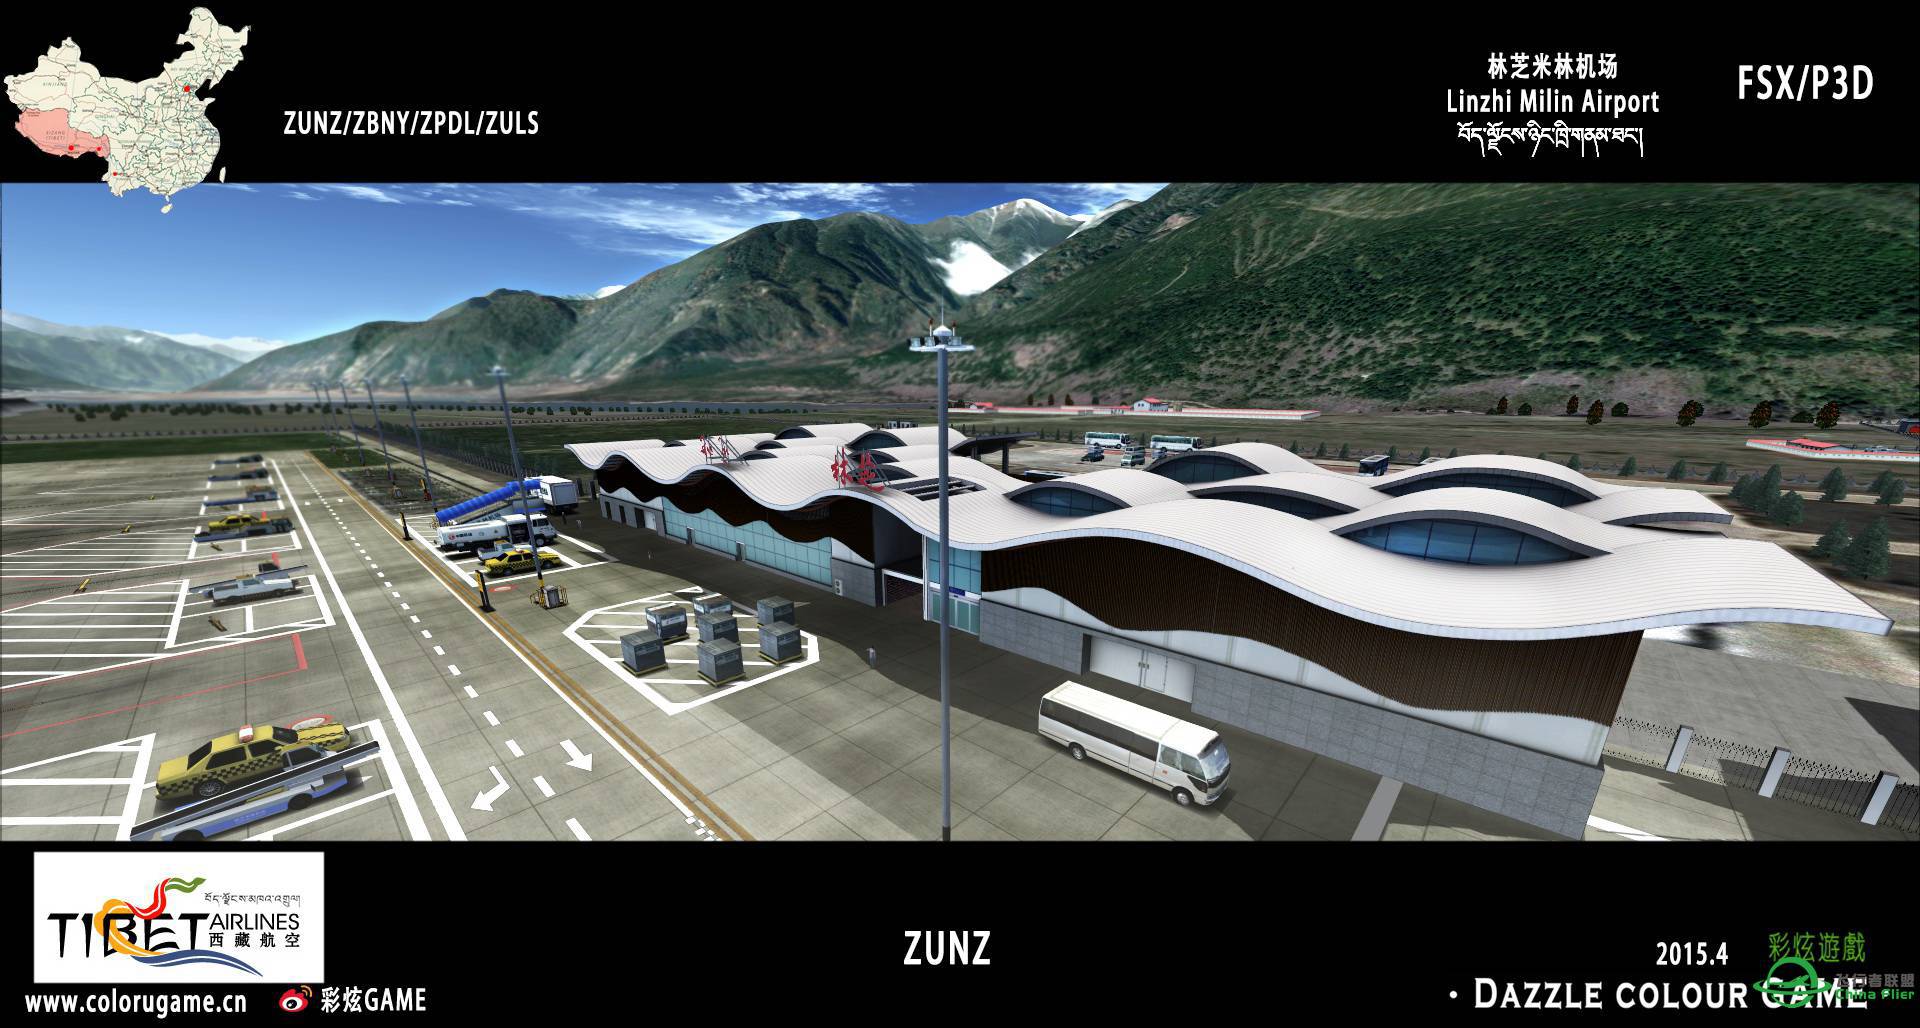 彩炫地景：林芝米林机场（ZUNZ）正式发布！-4777 